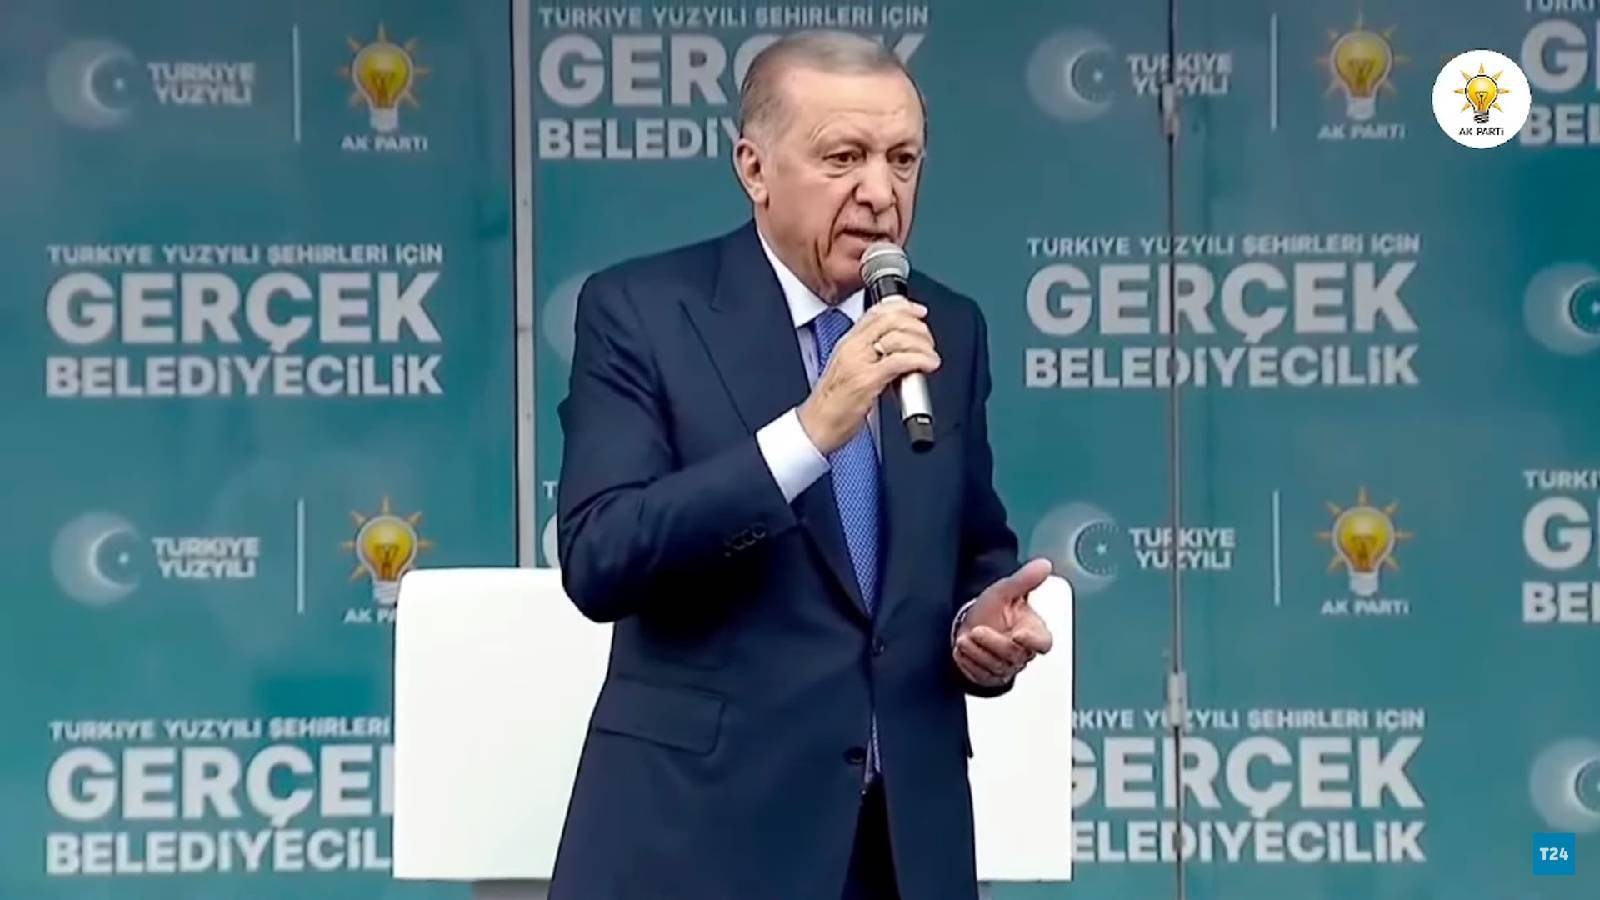 Erdoğan: Kent uzlaşısı diye bir şey uydurdular, kimin eli kimin cebinde belli değil